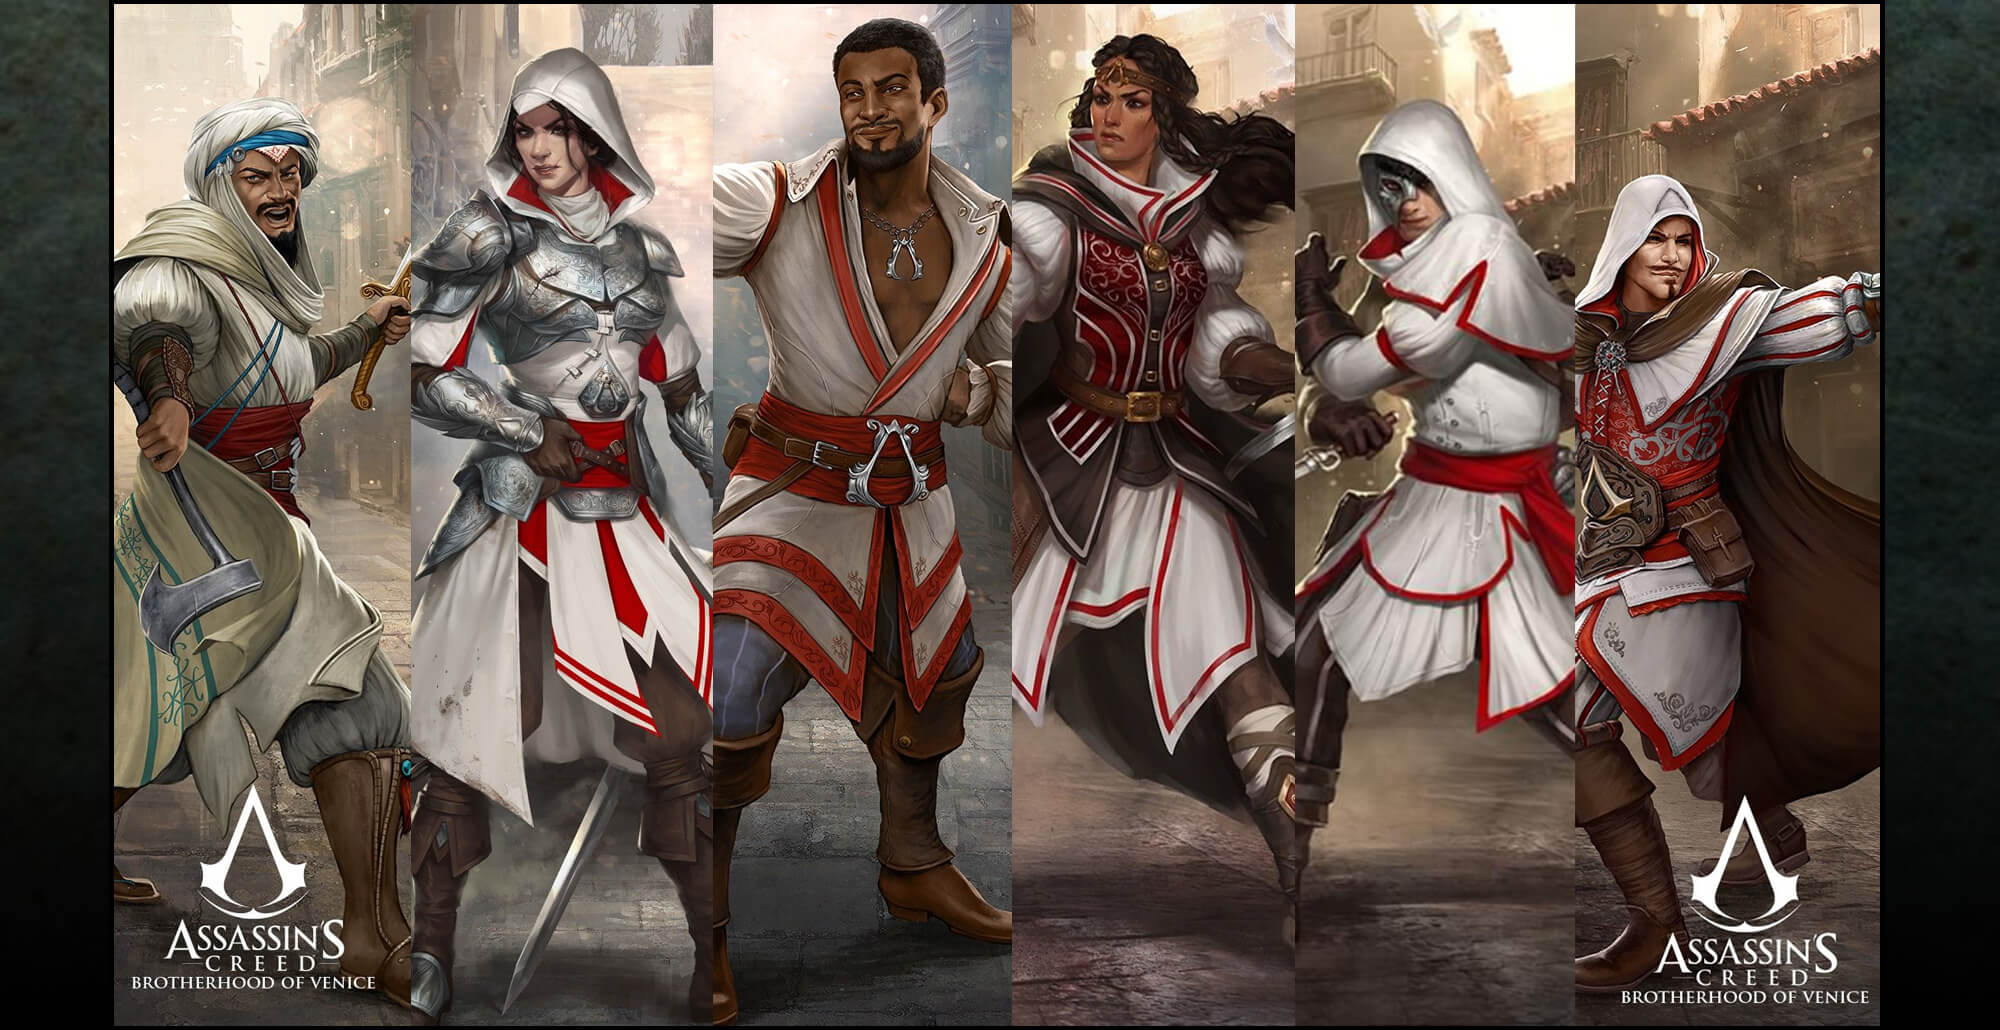 Assassins Creed Brotherhood of Venice